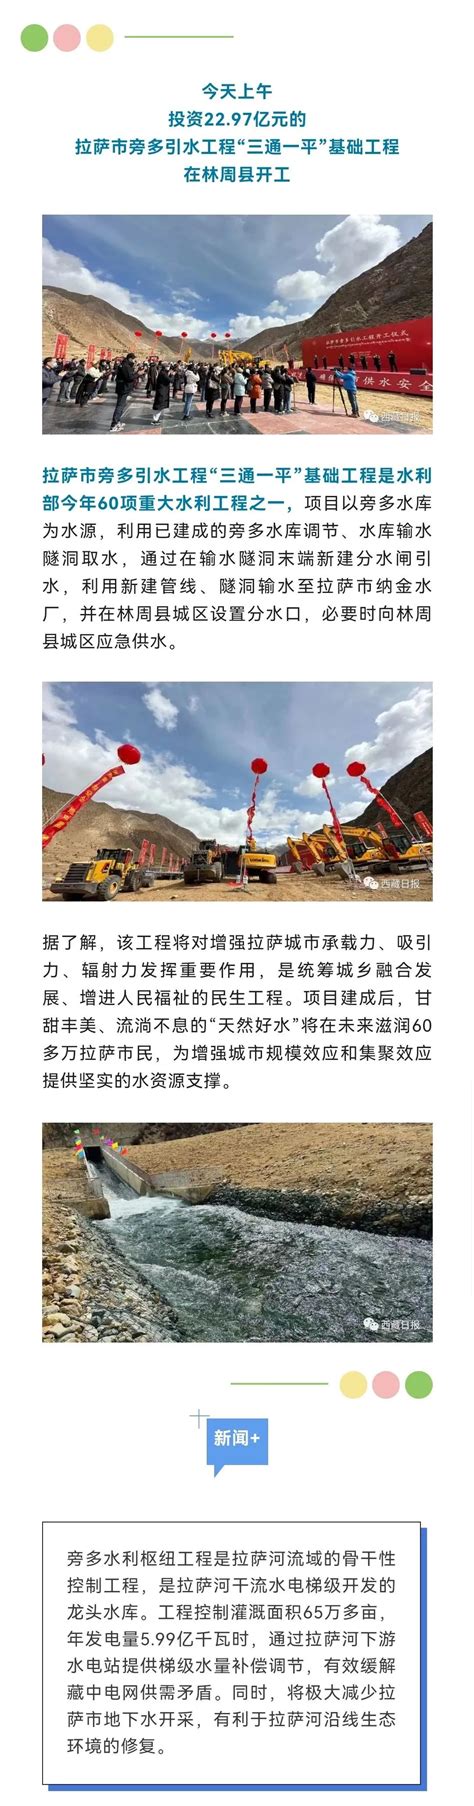 西藏阿里联网工程投运 主电网覆盖全区_凤凰网视频_凤凰网